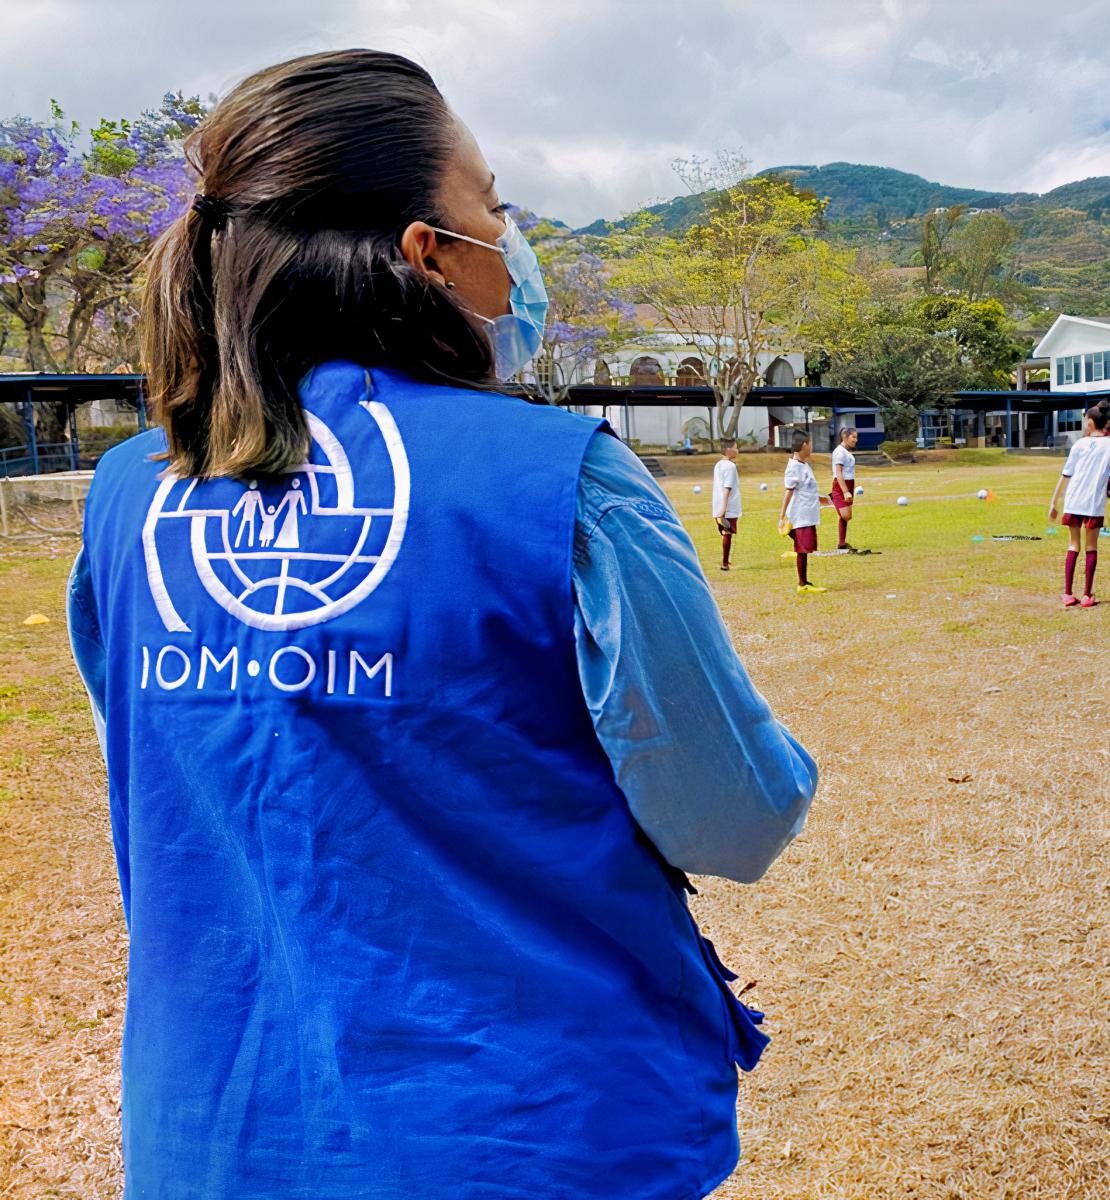 一名身穿国际移民组织背心的妇女看着一个有许多孩子在踢足球的足球场。